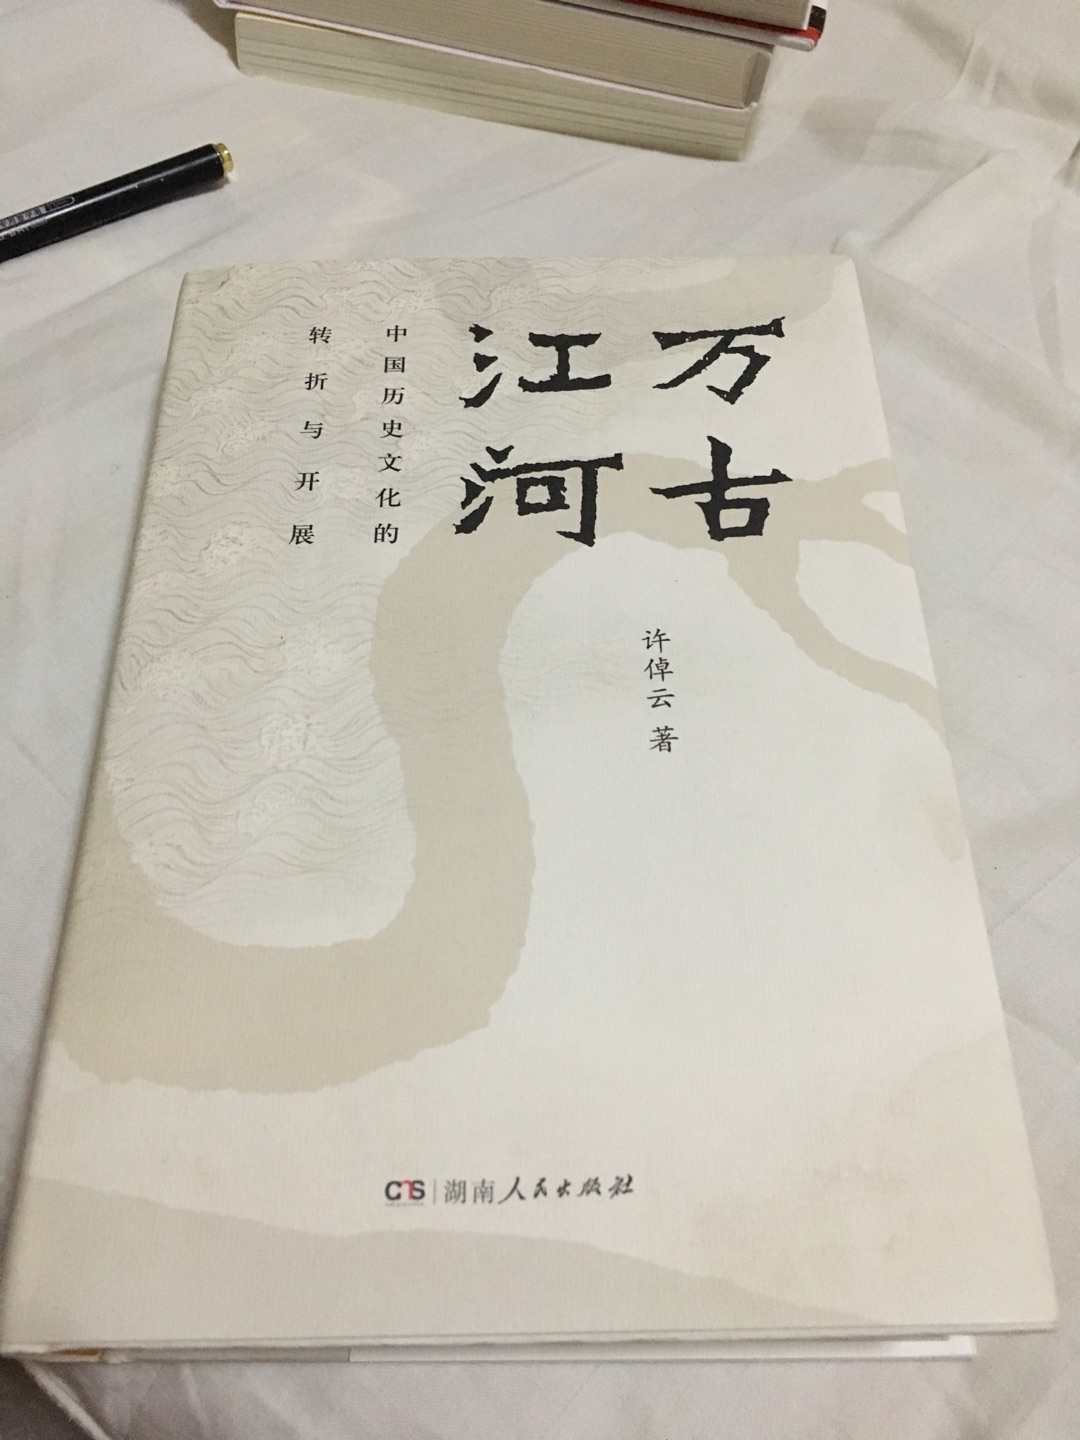 中国历史文化转折与开展，了解中国文化发展的好书。